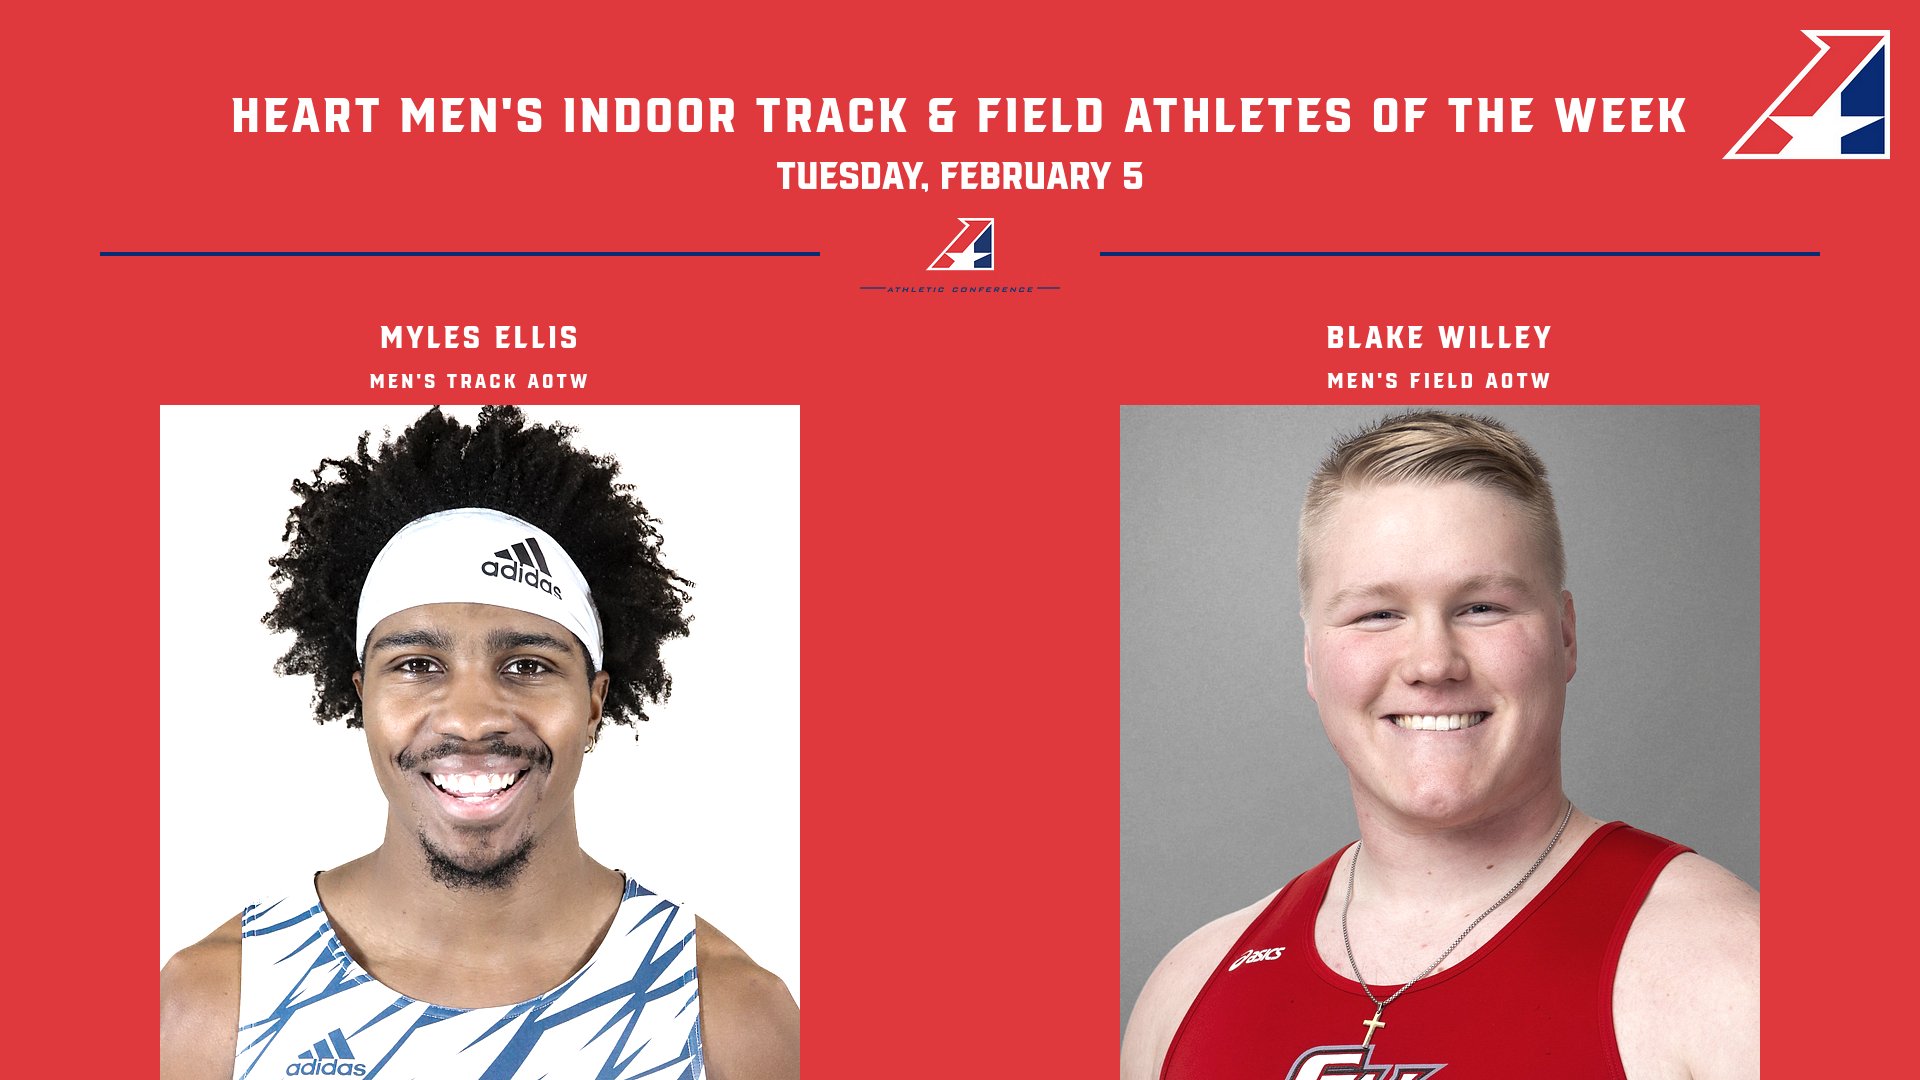 Ellis, Wiley Earn Heart Men’s Indoor Track & Field Athlete of the Week Honors